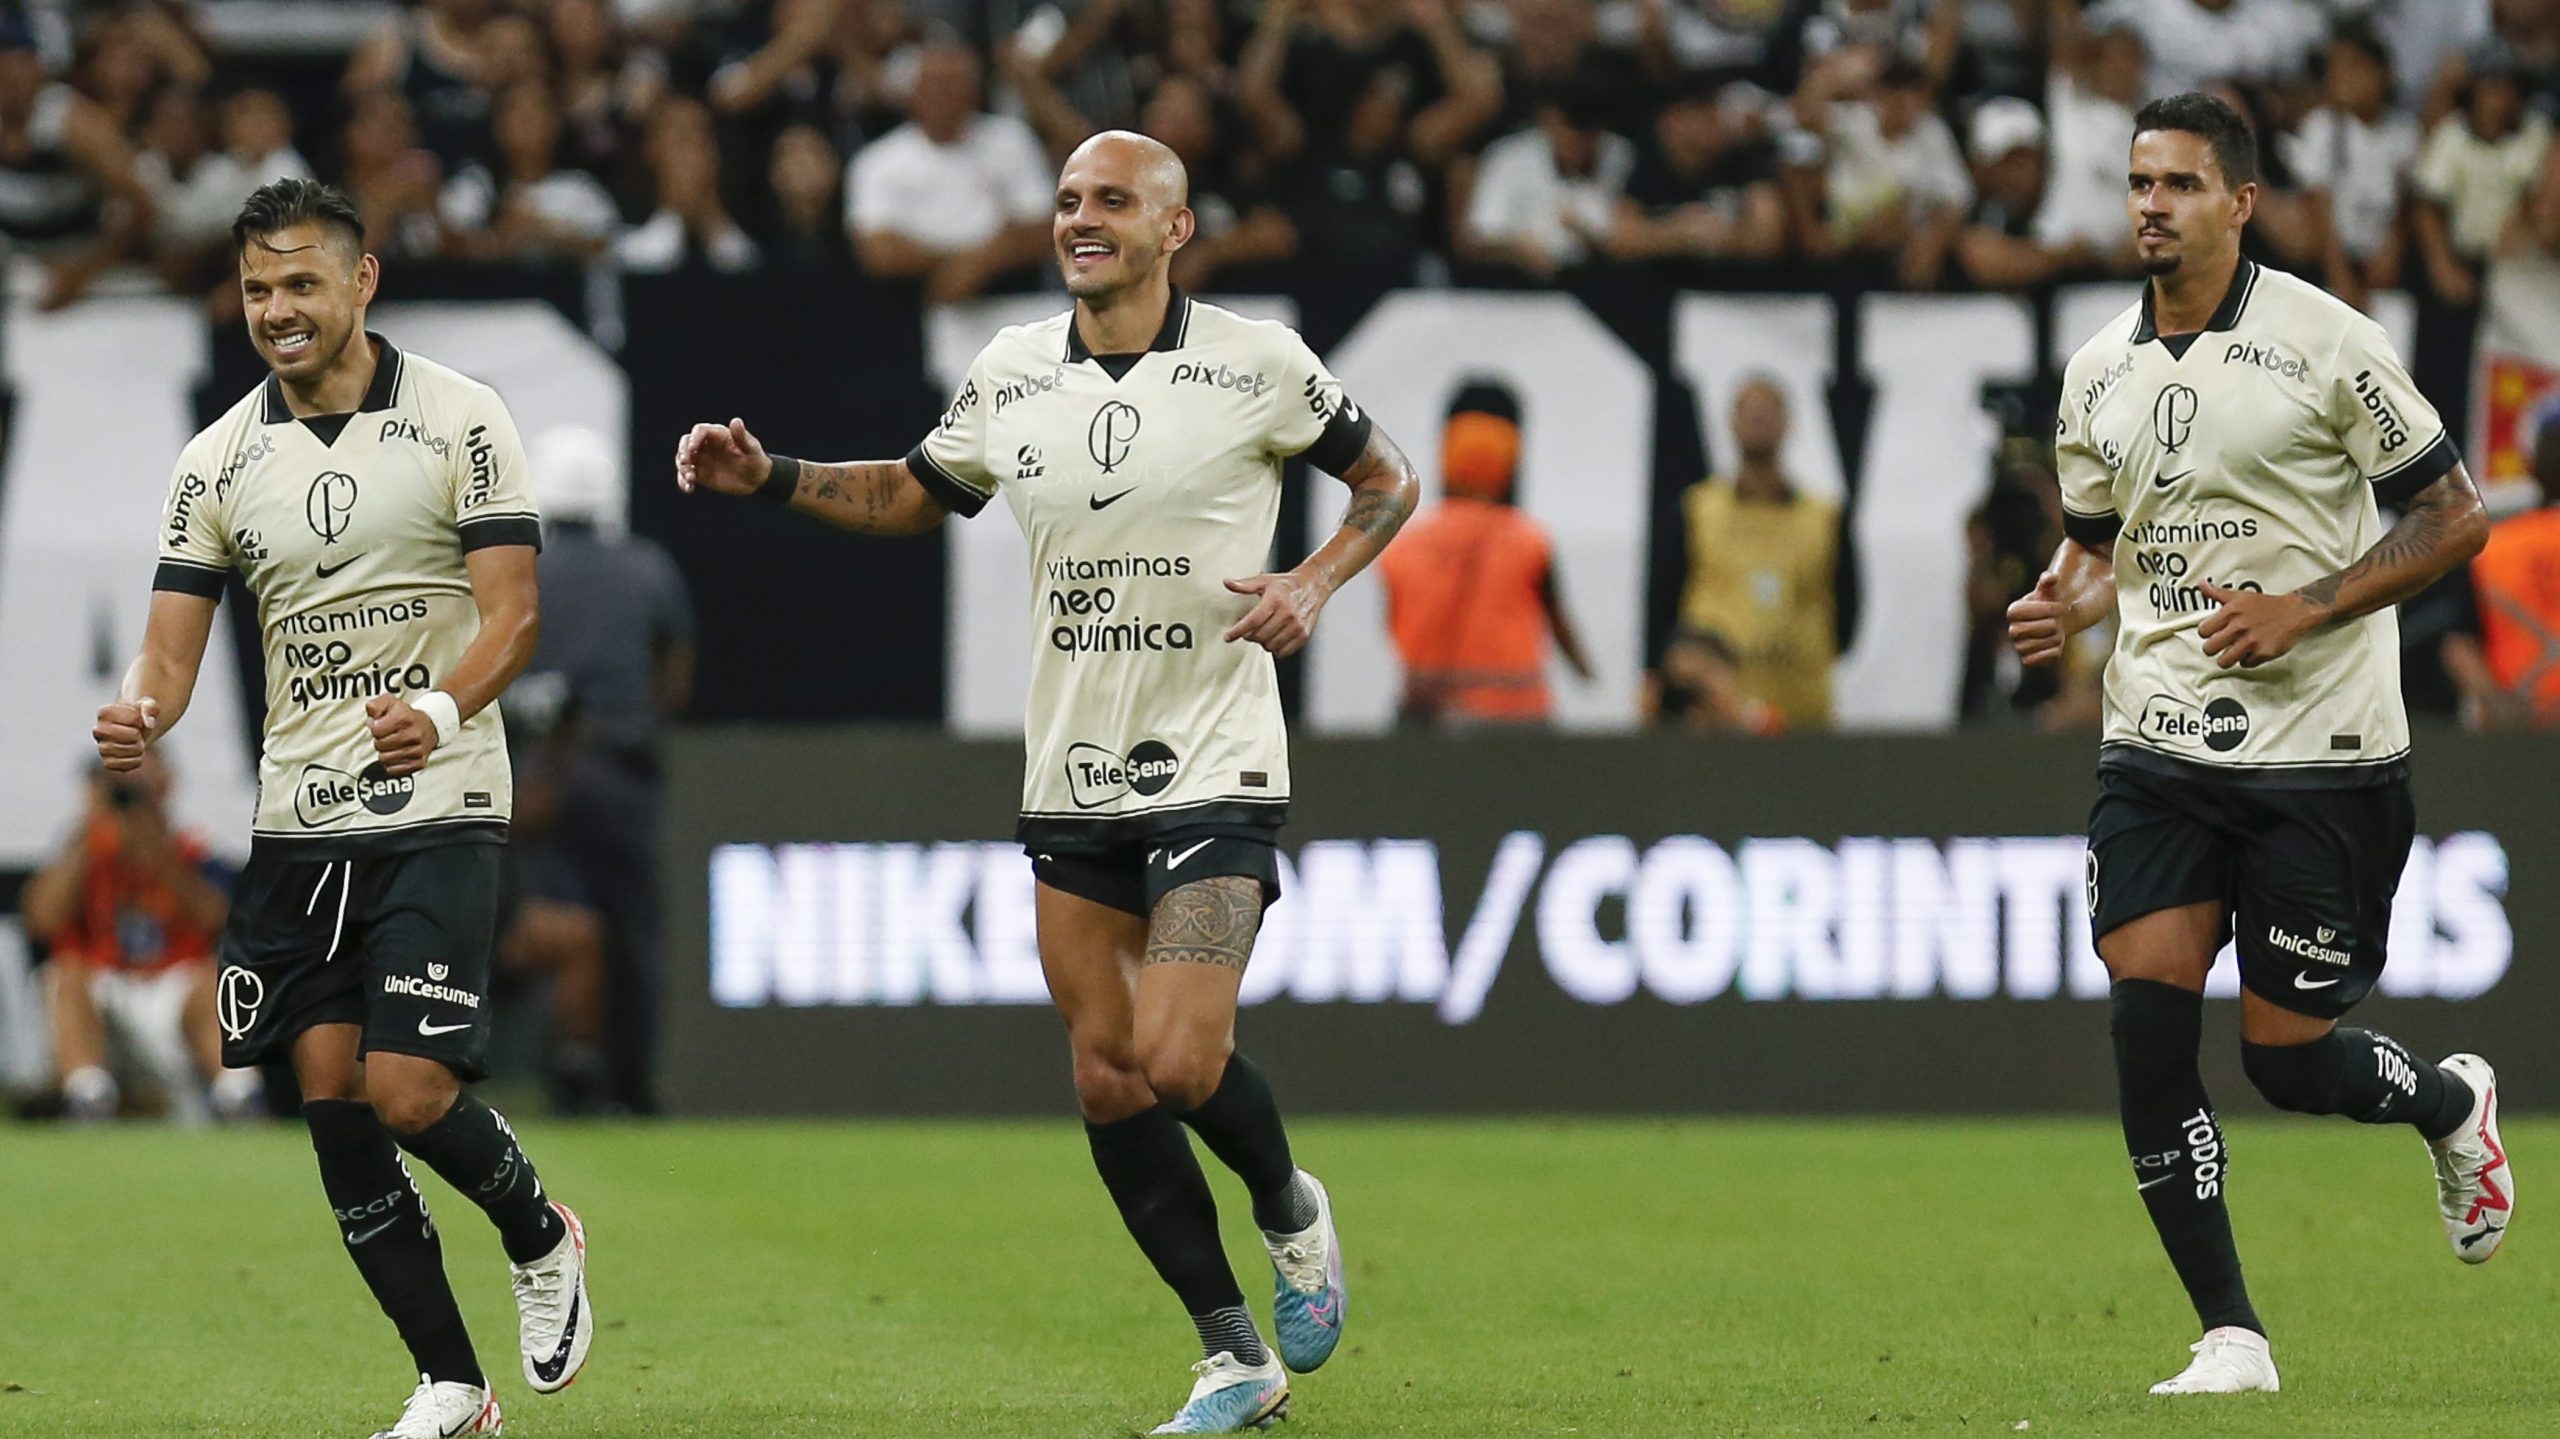 Uma homenagem ao melhor jogador do Corinthians hoje! VAI TRAVEEE